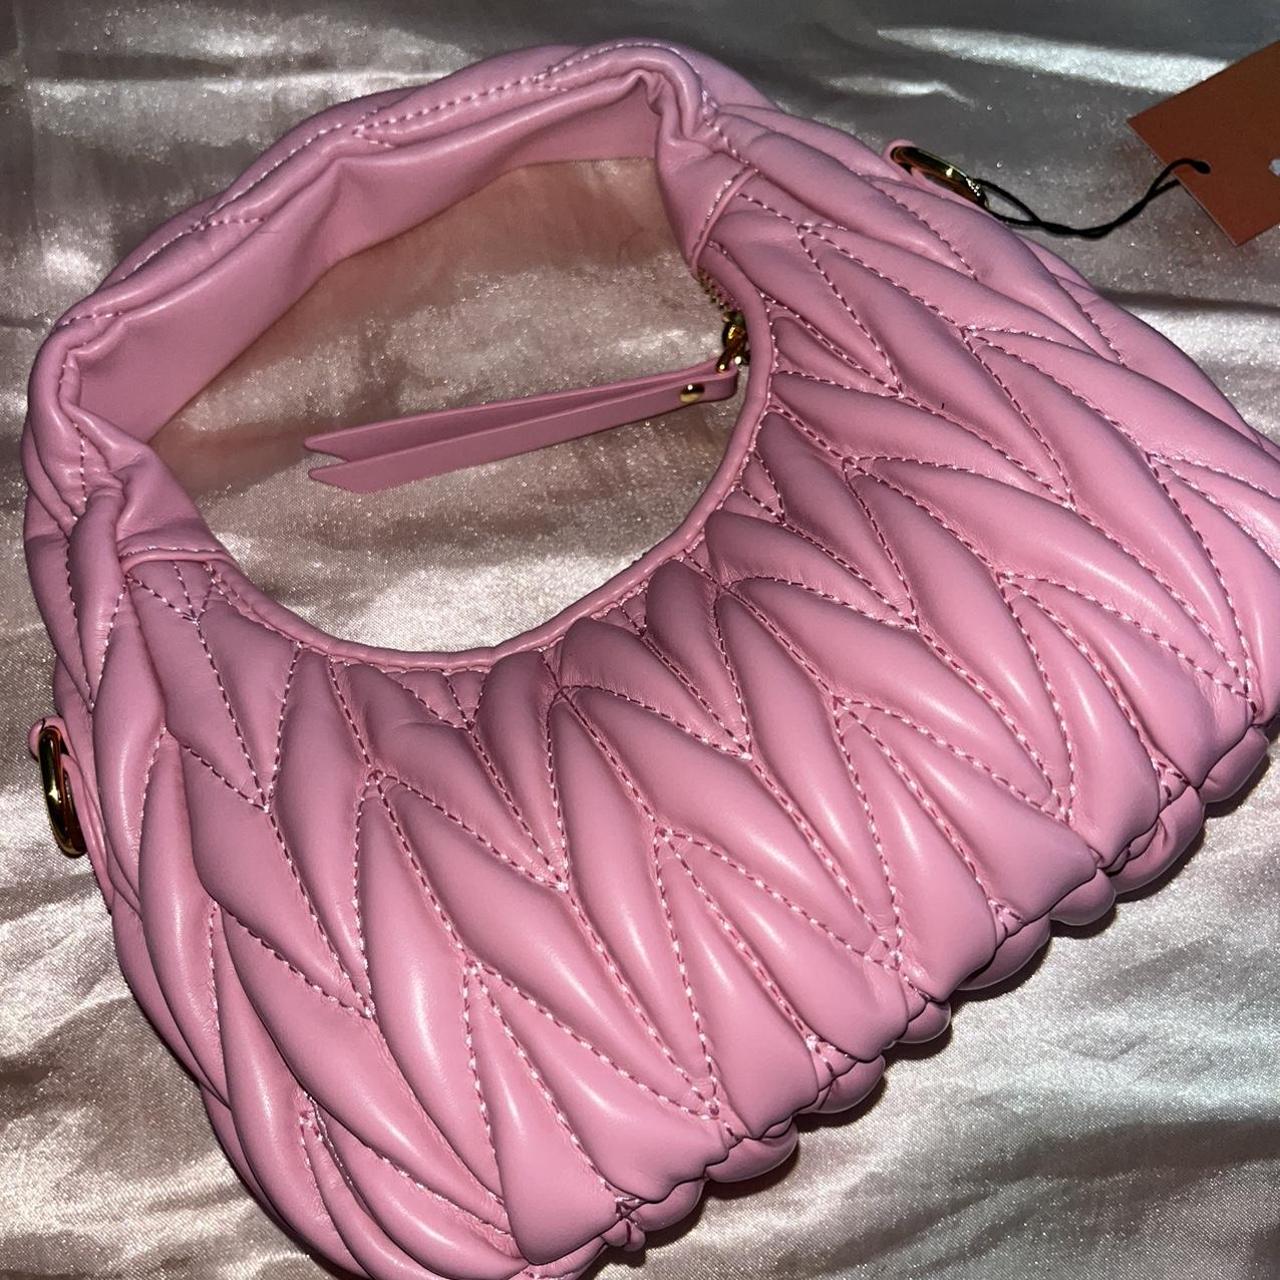 Cute pink bag - Depop